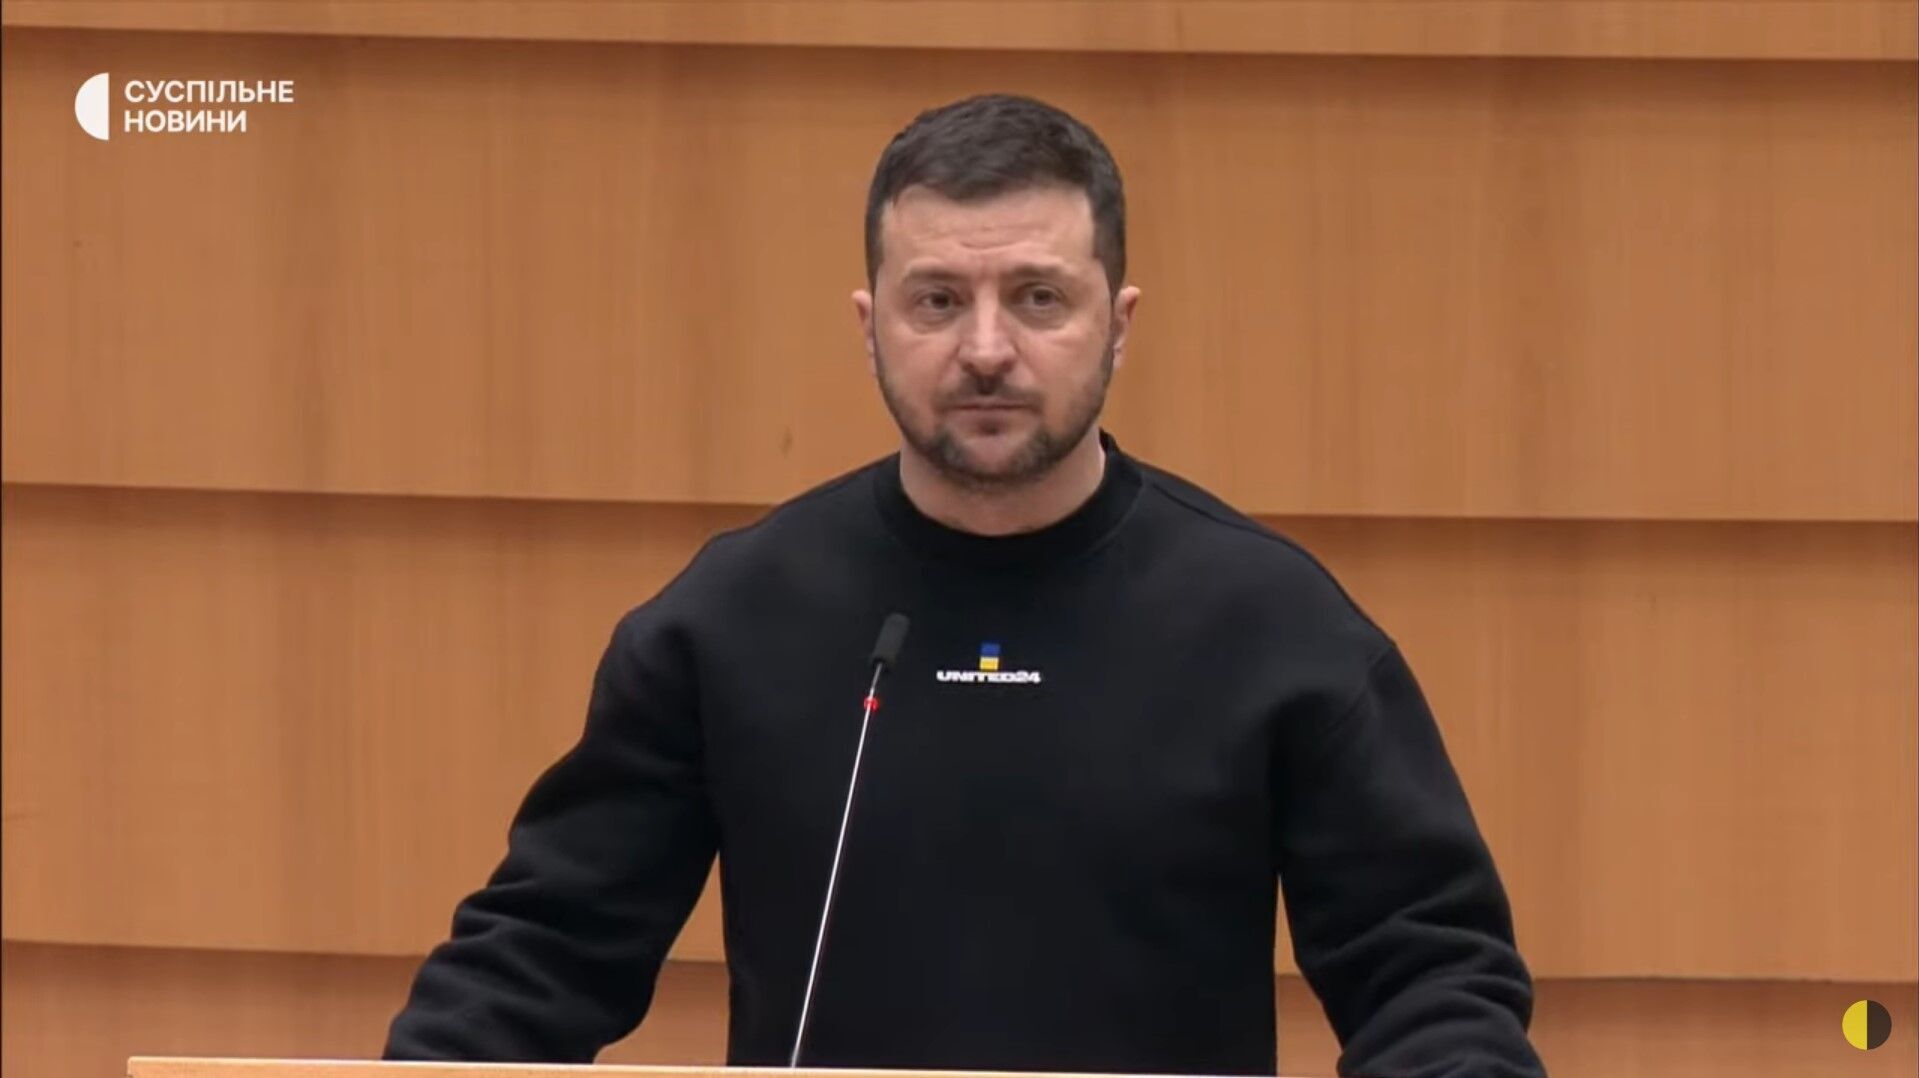 Зеленский не сдержал эмоций во время выступления в Европарламенте. Фото и видео